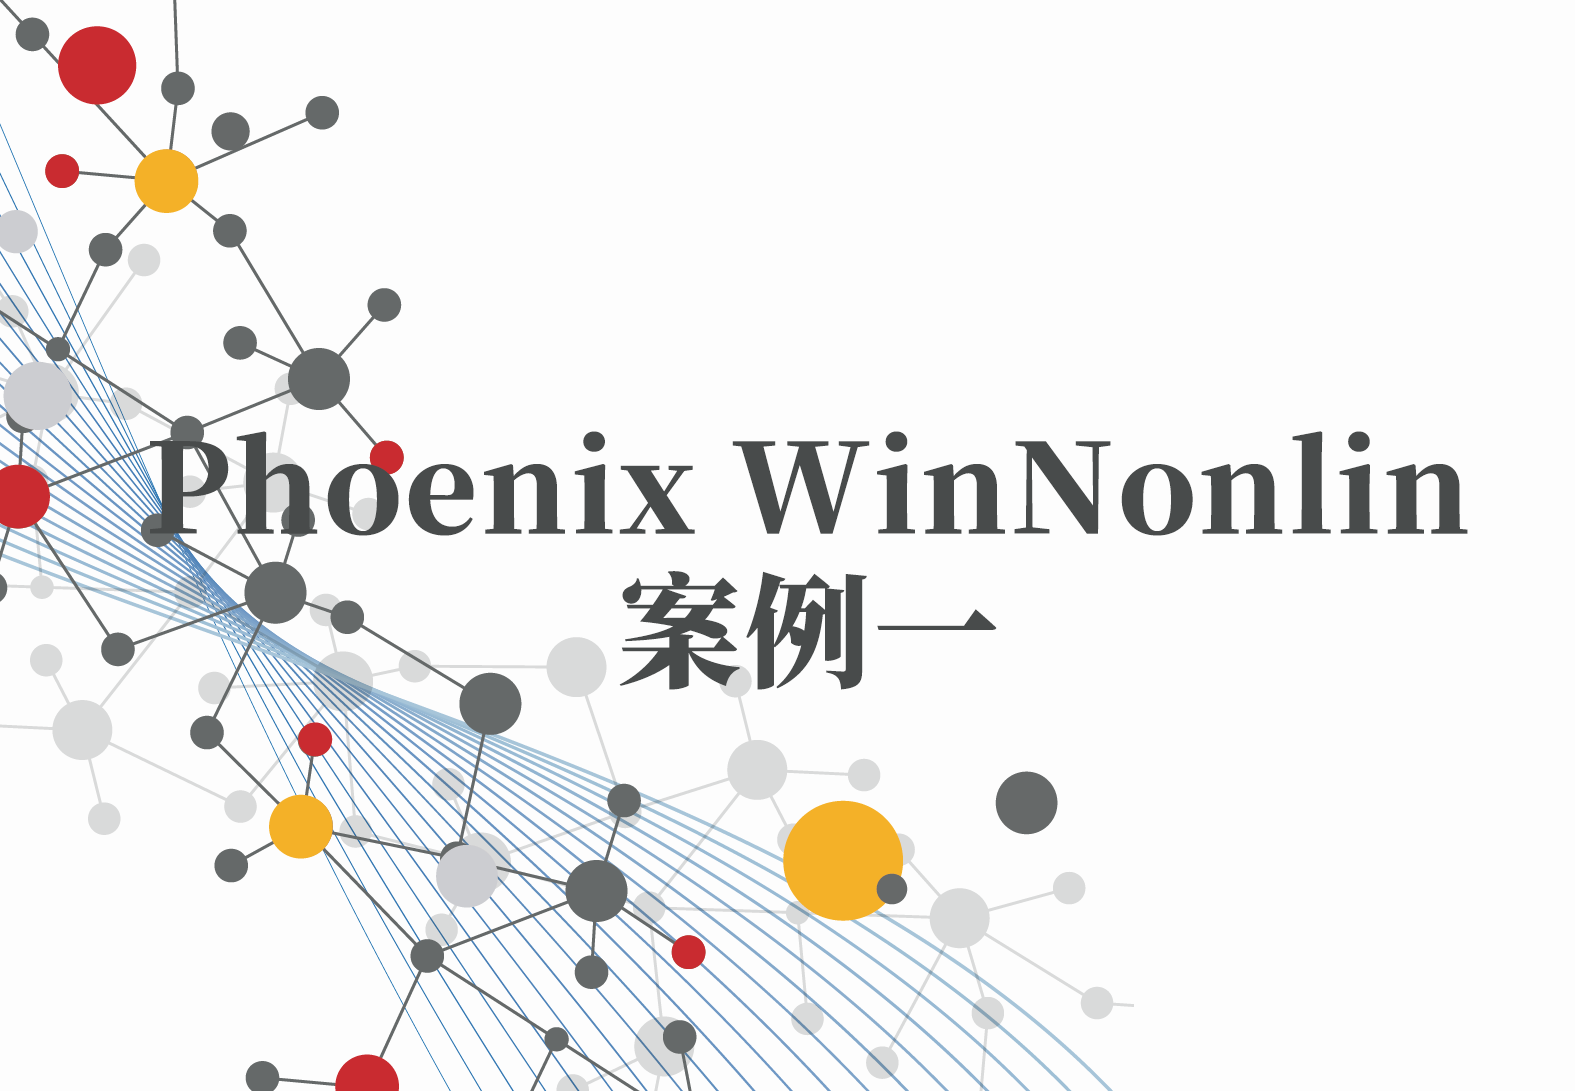 WinNonlin案例1:Phoenix WinNonlin生物等效性结果解读